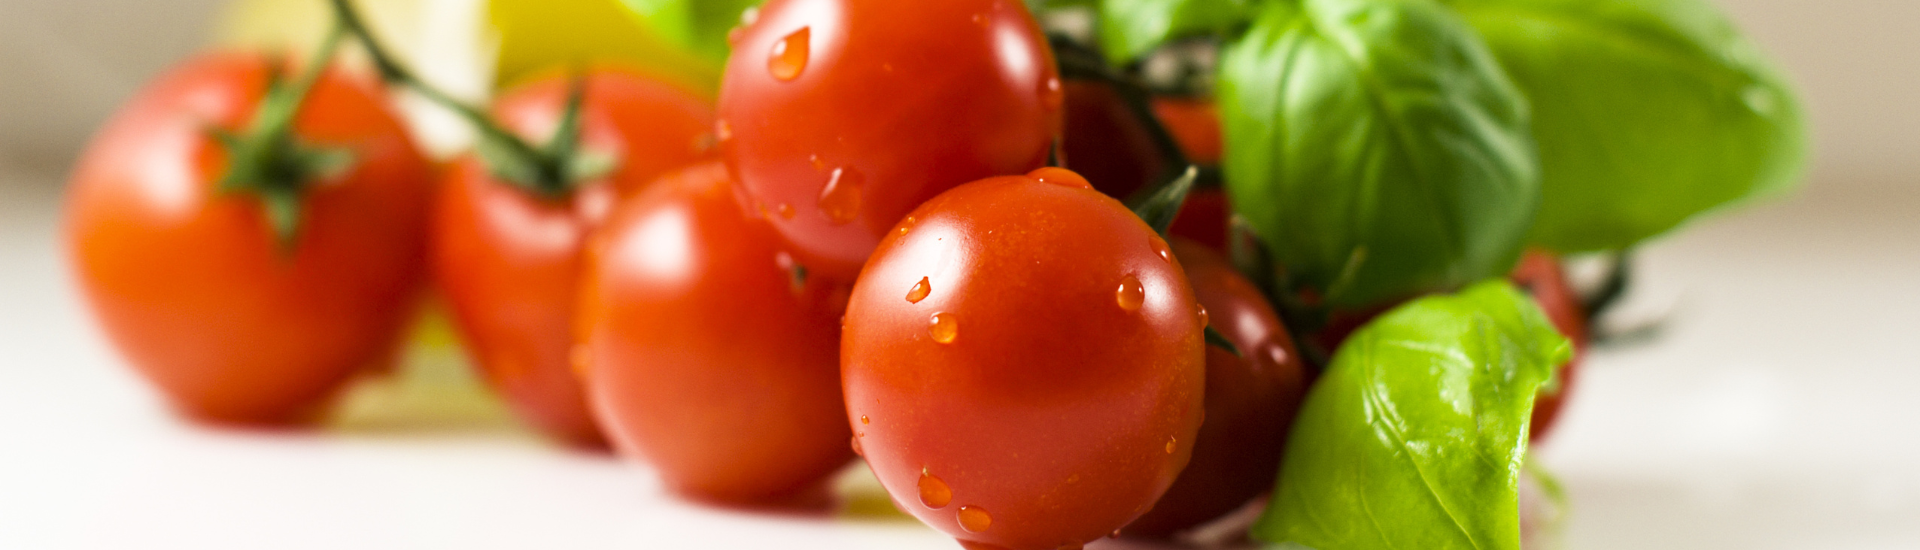 Przepisy na przetwory z pomidorów